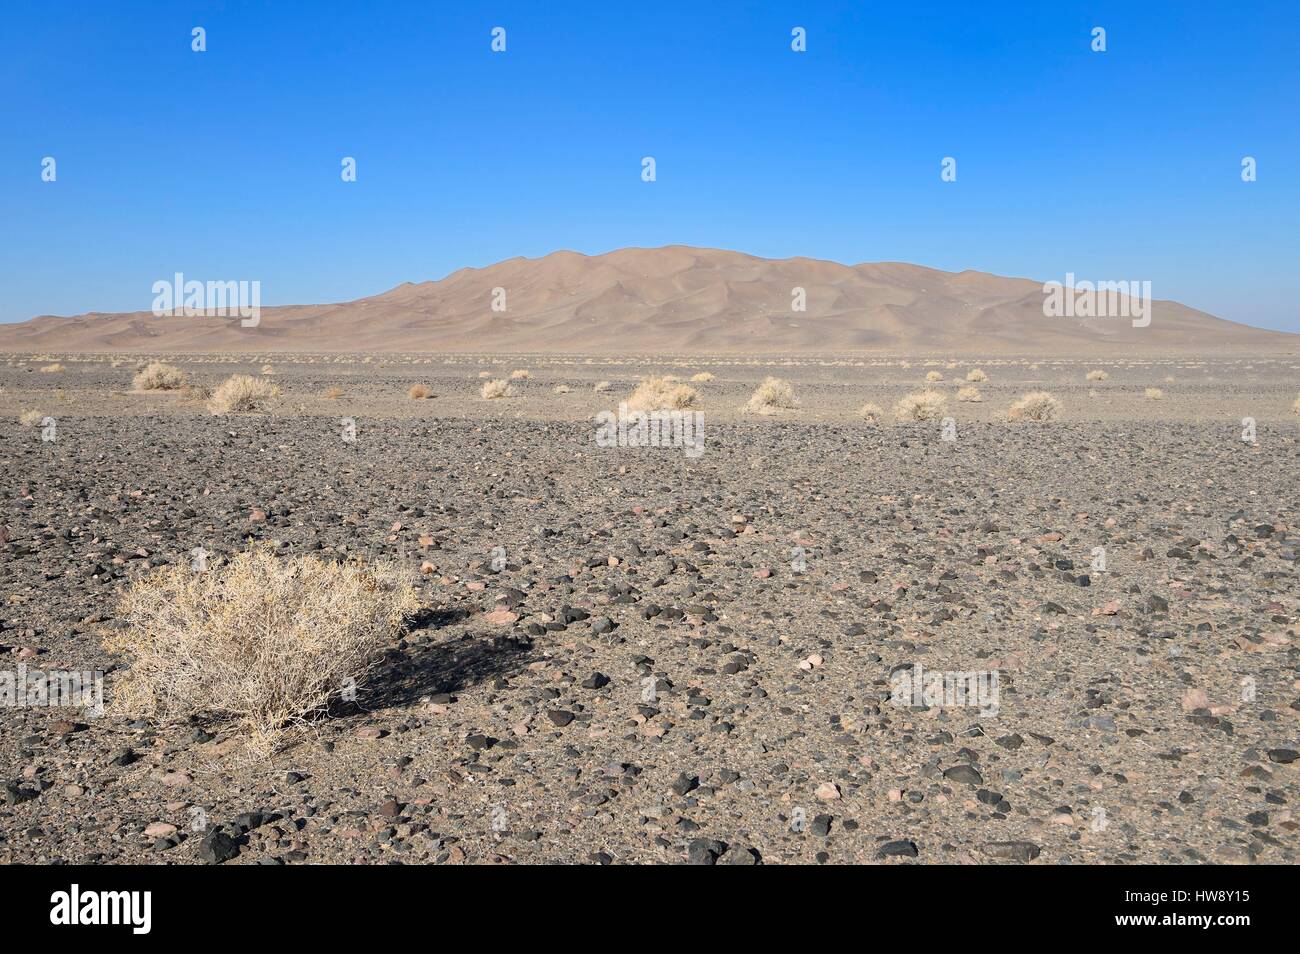 Iran, Yazd Provinz, Dasht-e Kavir Wüste, Moghestan, Dünensystem, dessen höchste Düne 200 Meter erreicht Stockfoto